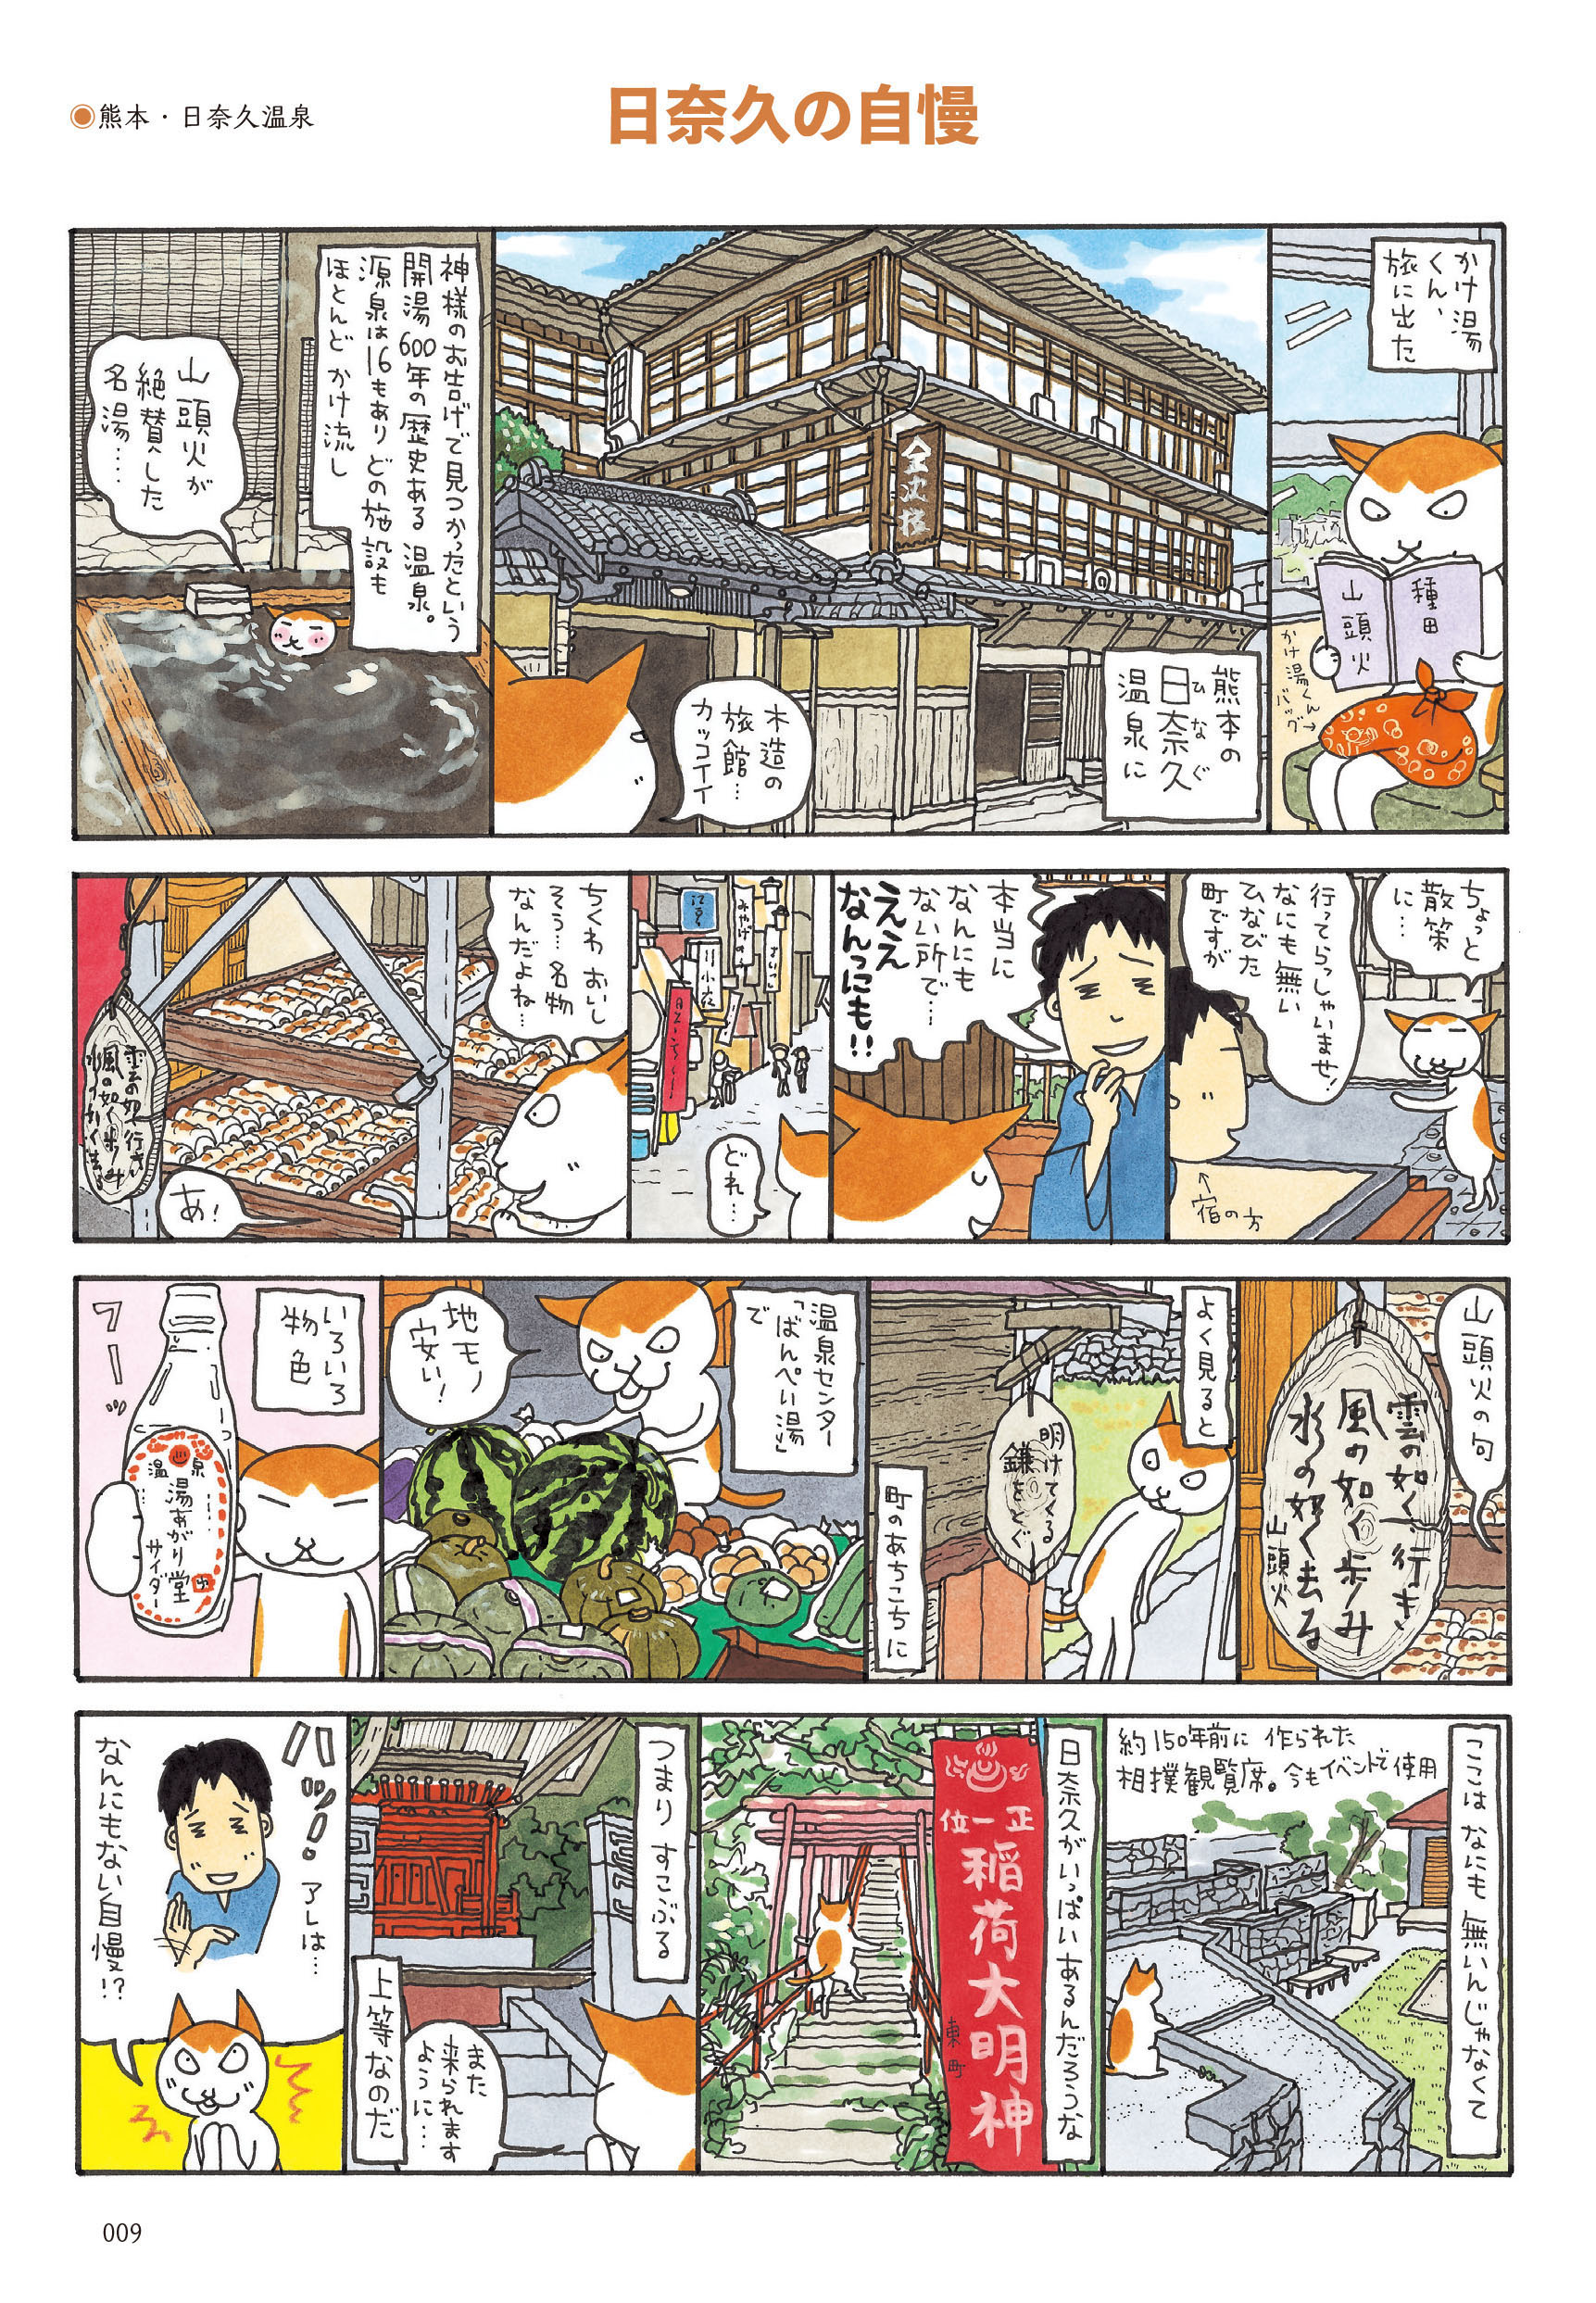 全国の温泉を旅するネコの かけ湯くん が活躍する 漫画家 松本英子 渾身の温泉賛歌コミックエッセイ発売 立ち読み公開中 Web河出